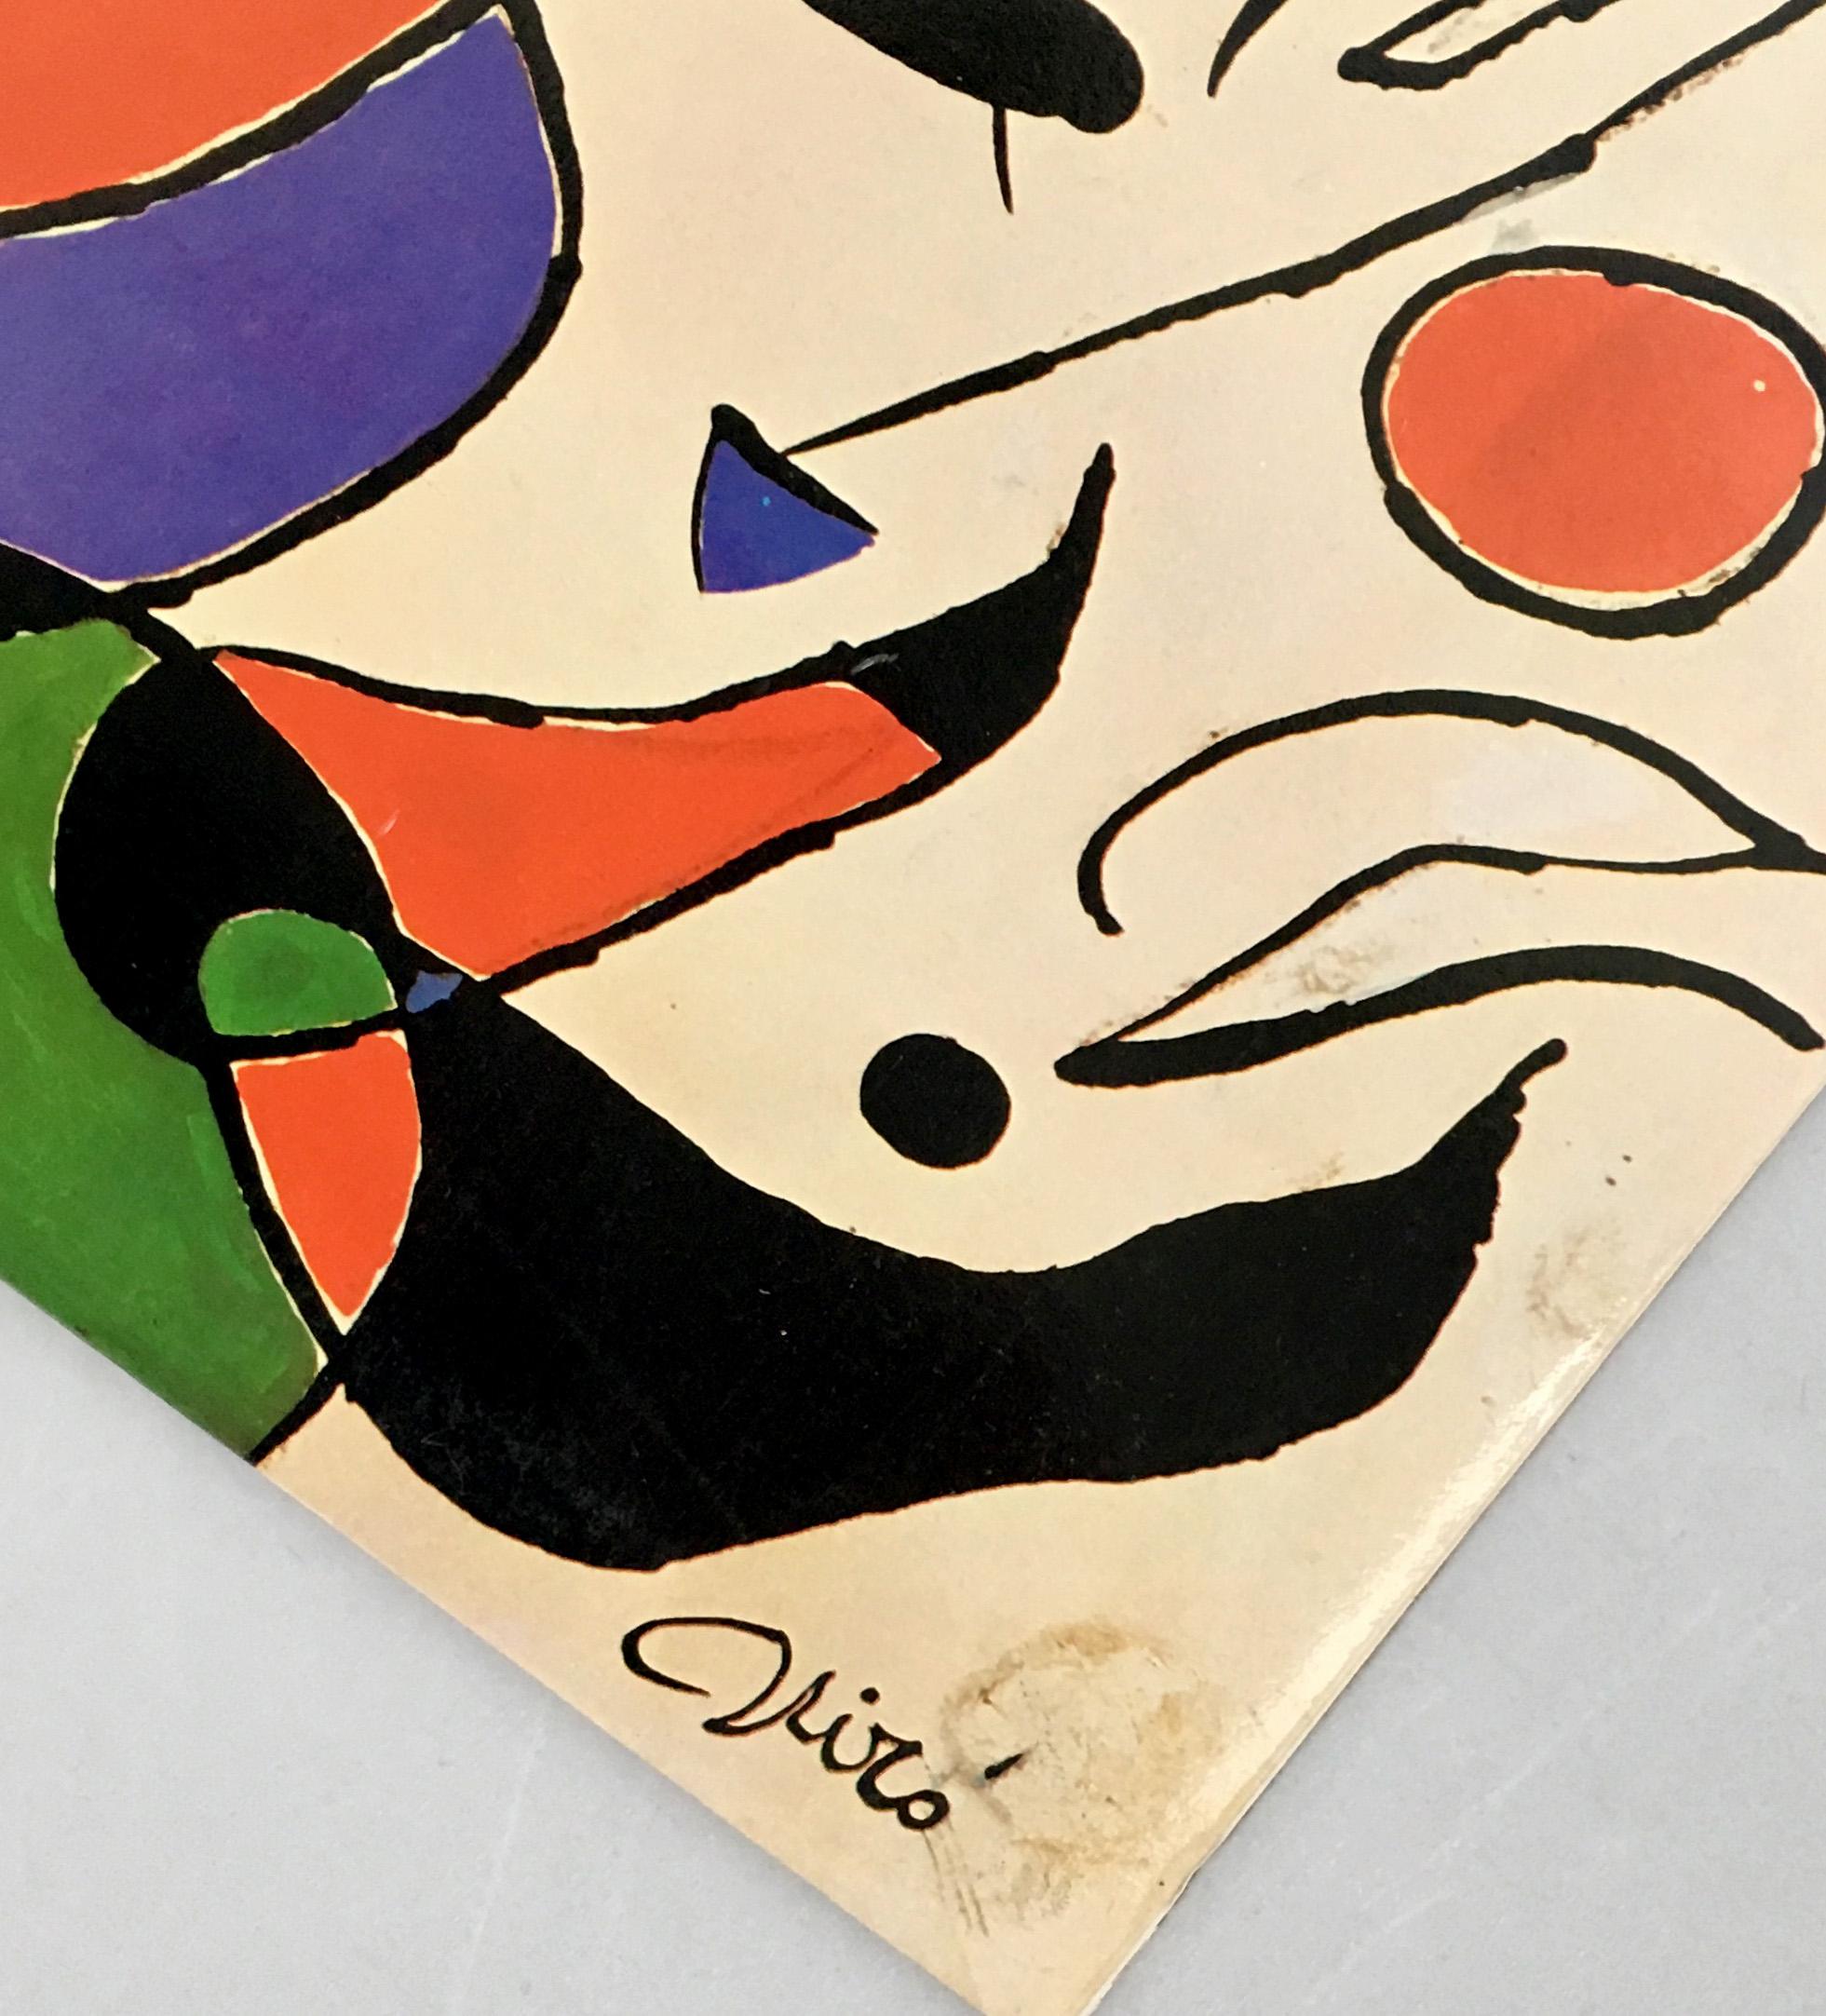 Joan Miró vinyl album art: set of two, 1966 & 1979:

Raimon and Joan Miró were close friends that first collaborated on the 1966 album Cançons de la roda del temps. In 1979, Miró designed a cover for the album Quan la aigua queixa, including the